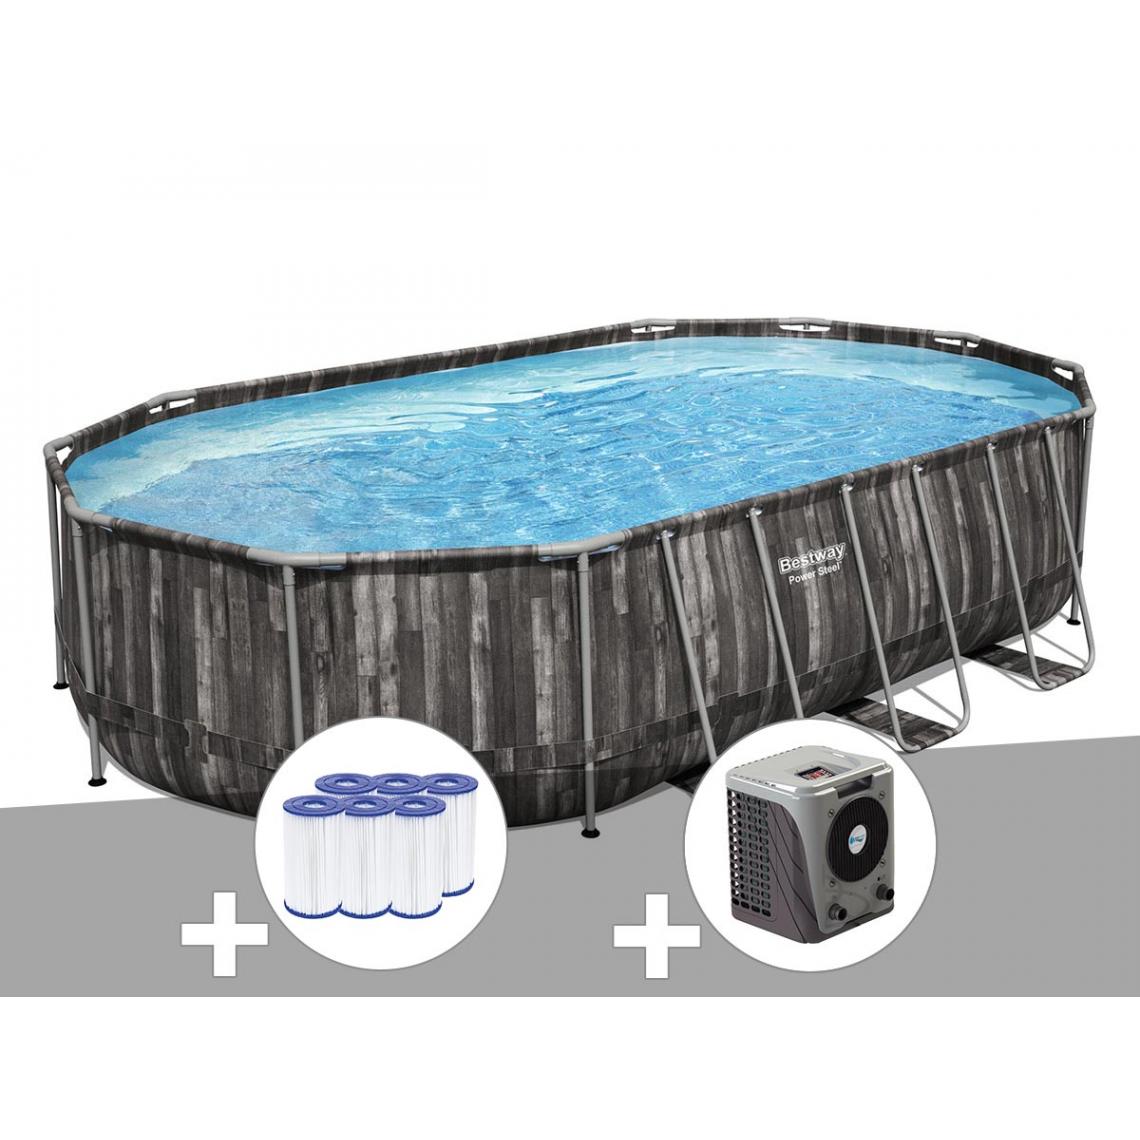 Bestway - Kit piscine tubulaire ovale Bestway Power Steel décor bois 6,10 x 3,66 x 1,22 m + 6 cartouches de filtration + Pompe à chaleur - Piscine Tubulaire